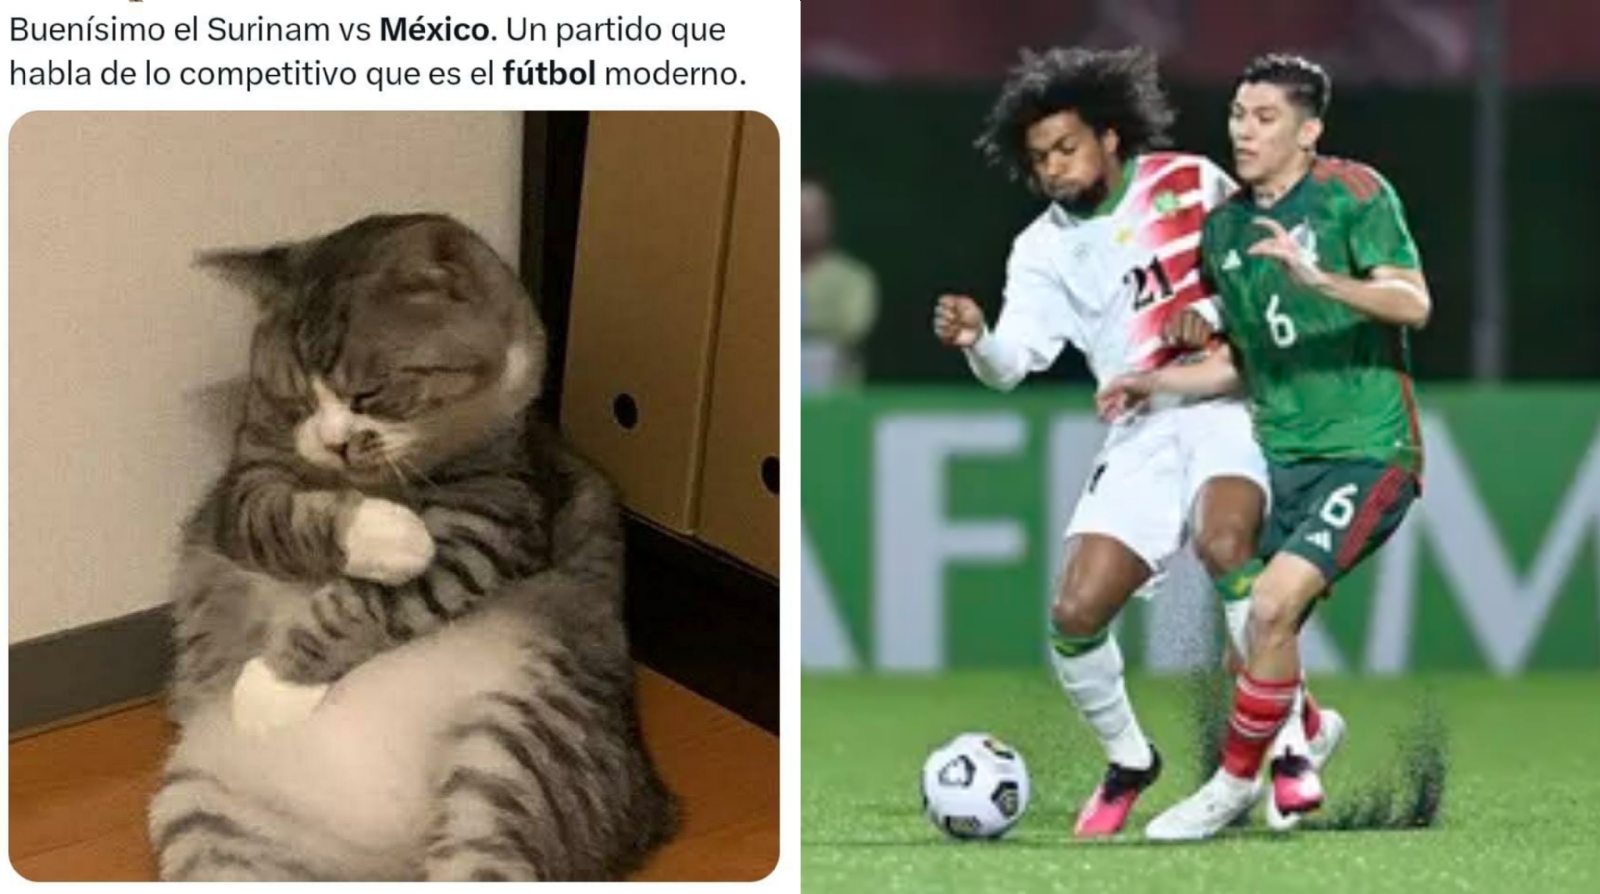 Los memes criticaron a la Selección Mexicana por el partido contra Surinam